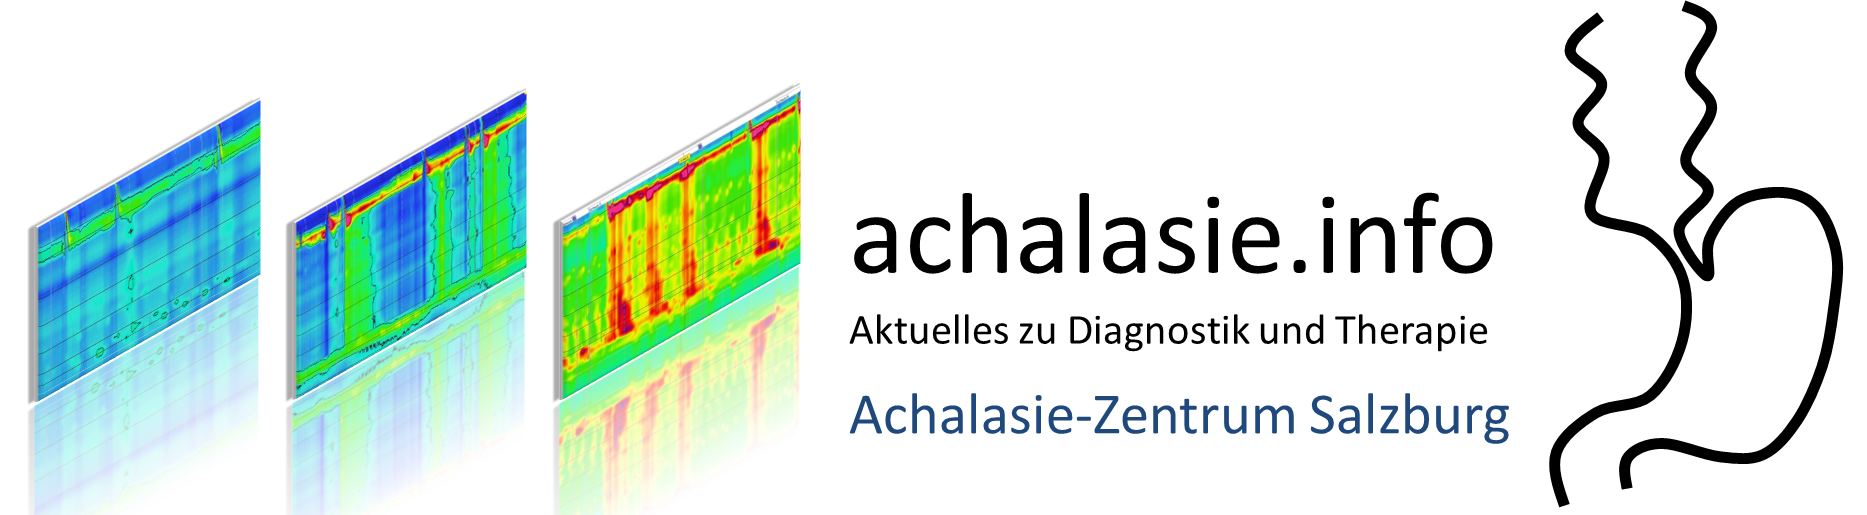 Achalasie.info